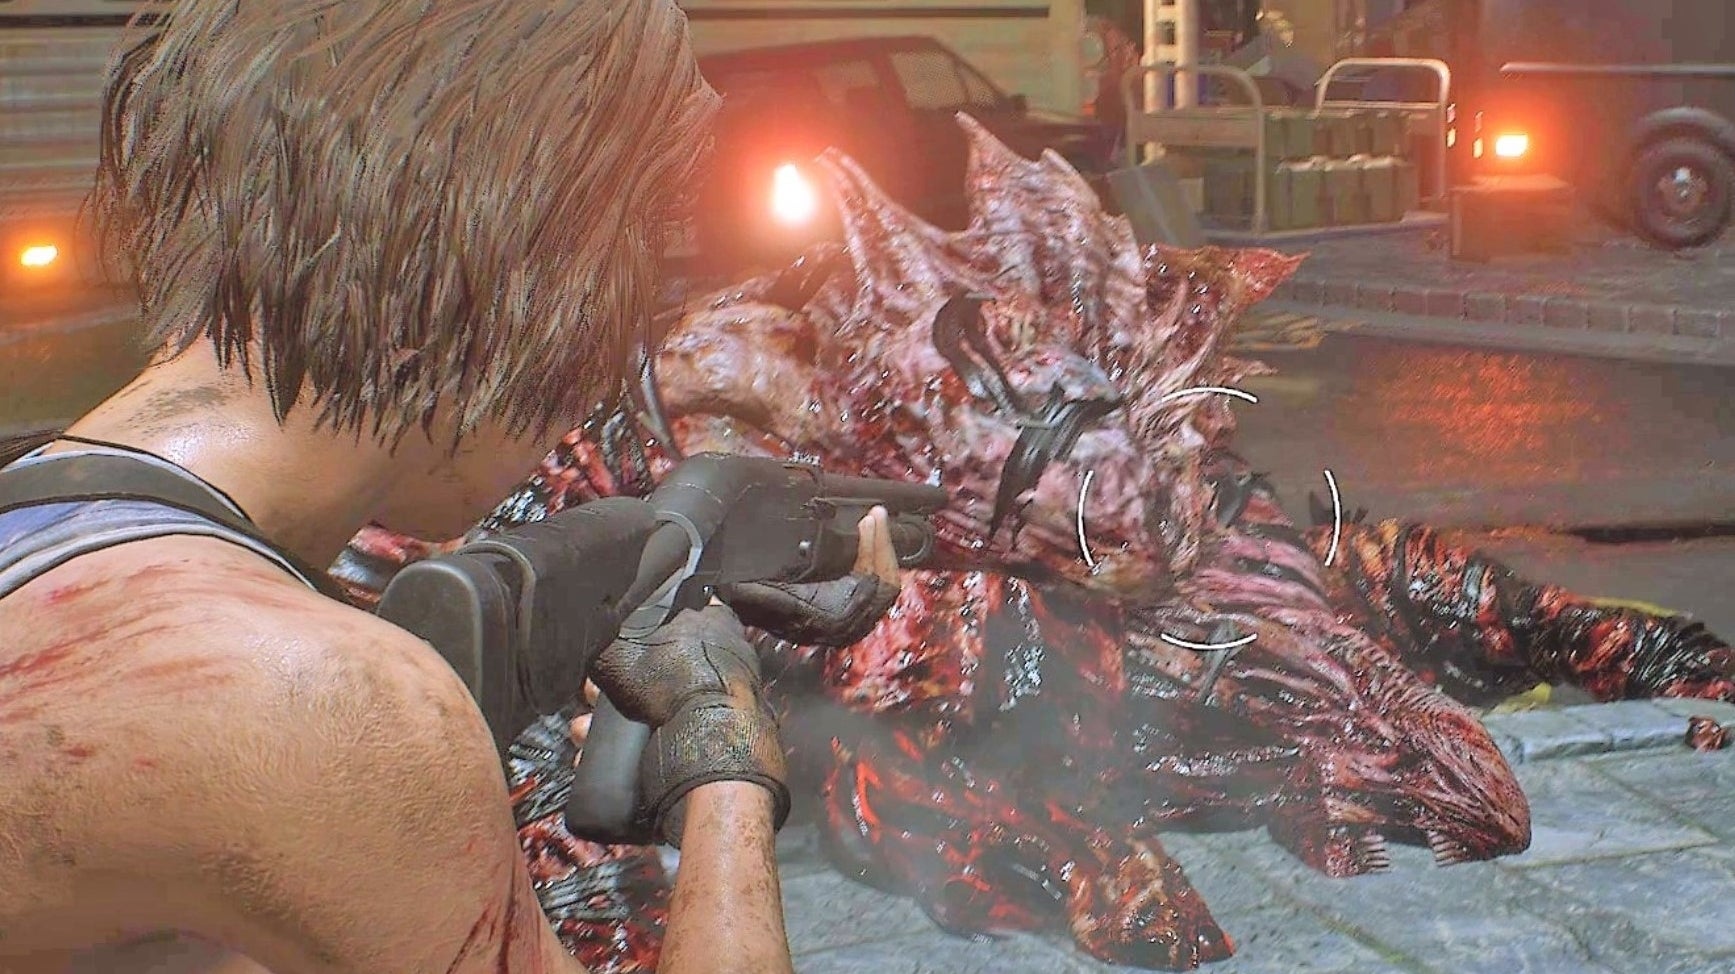 Obrazki dla Resident Evil 3 - tunele metra, walka z Nemesisem na placu, wieża zegarowa